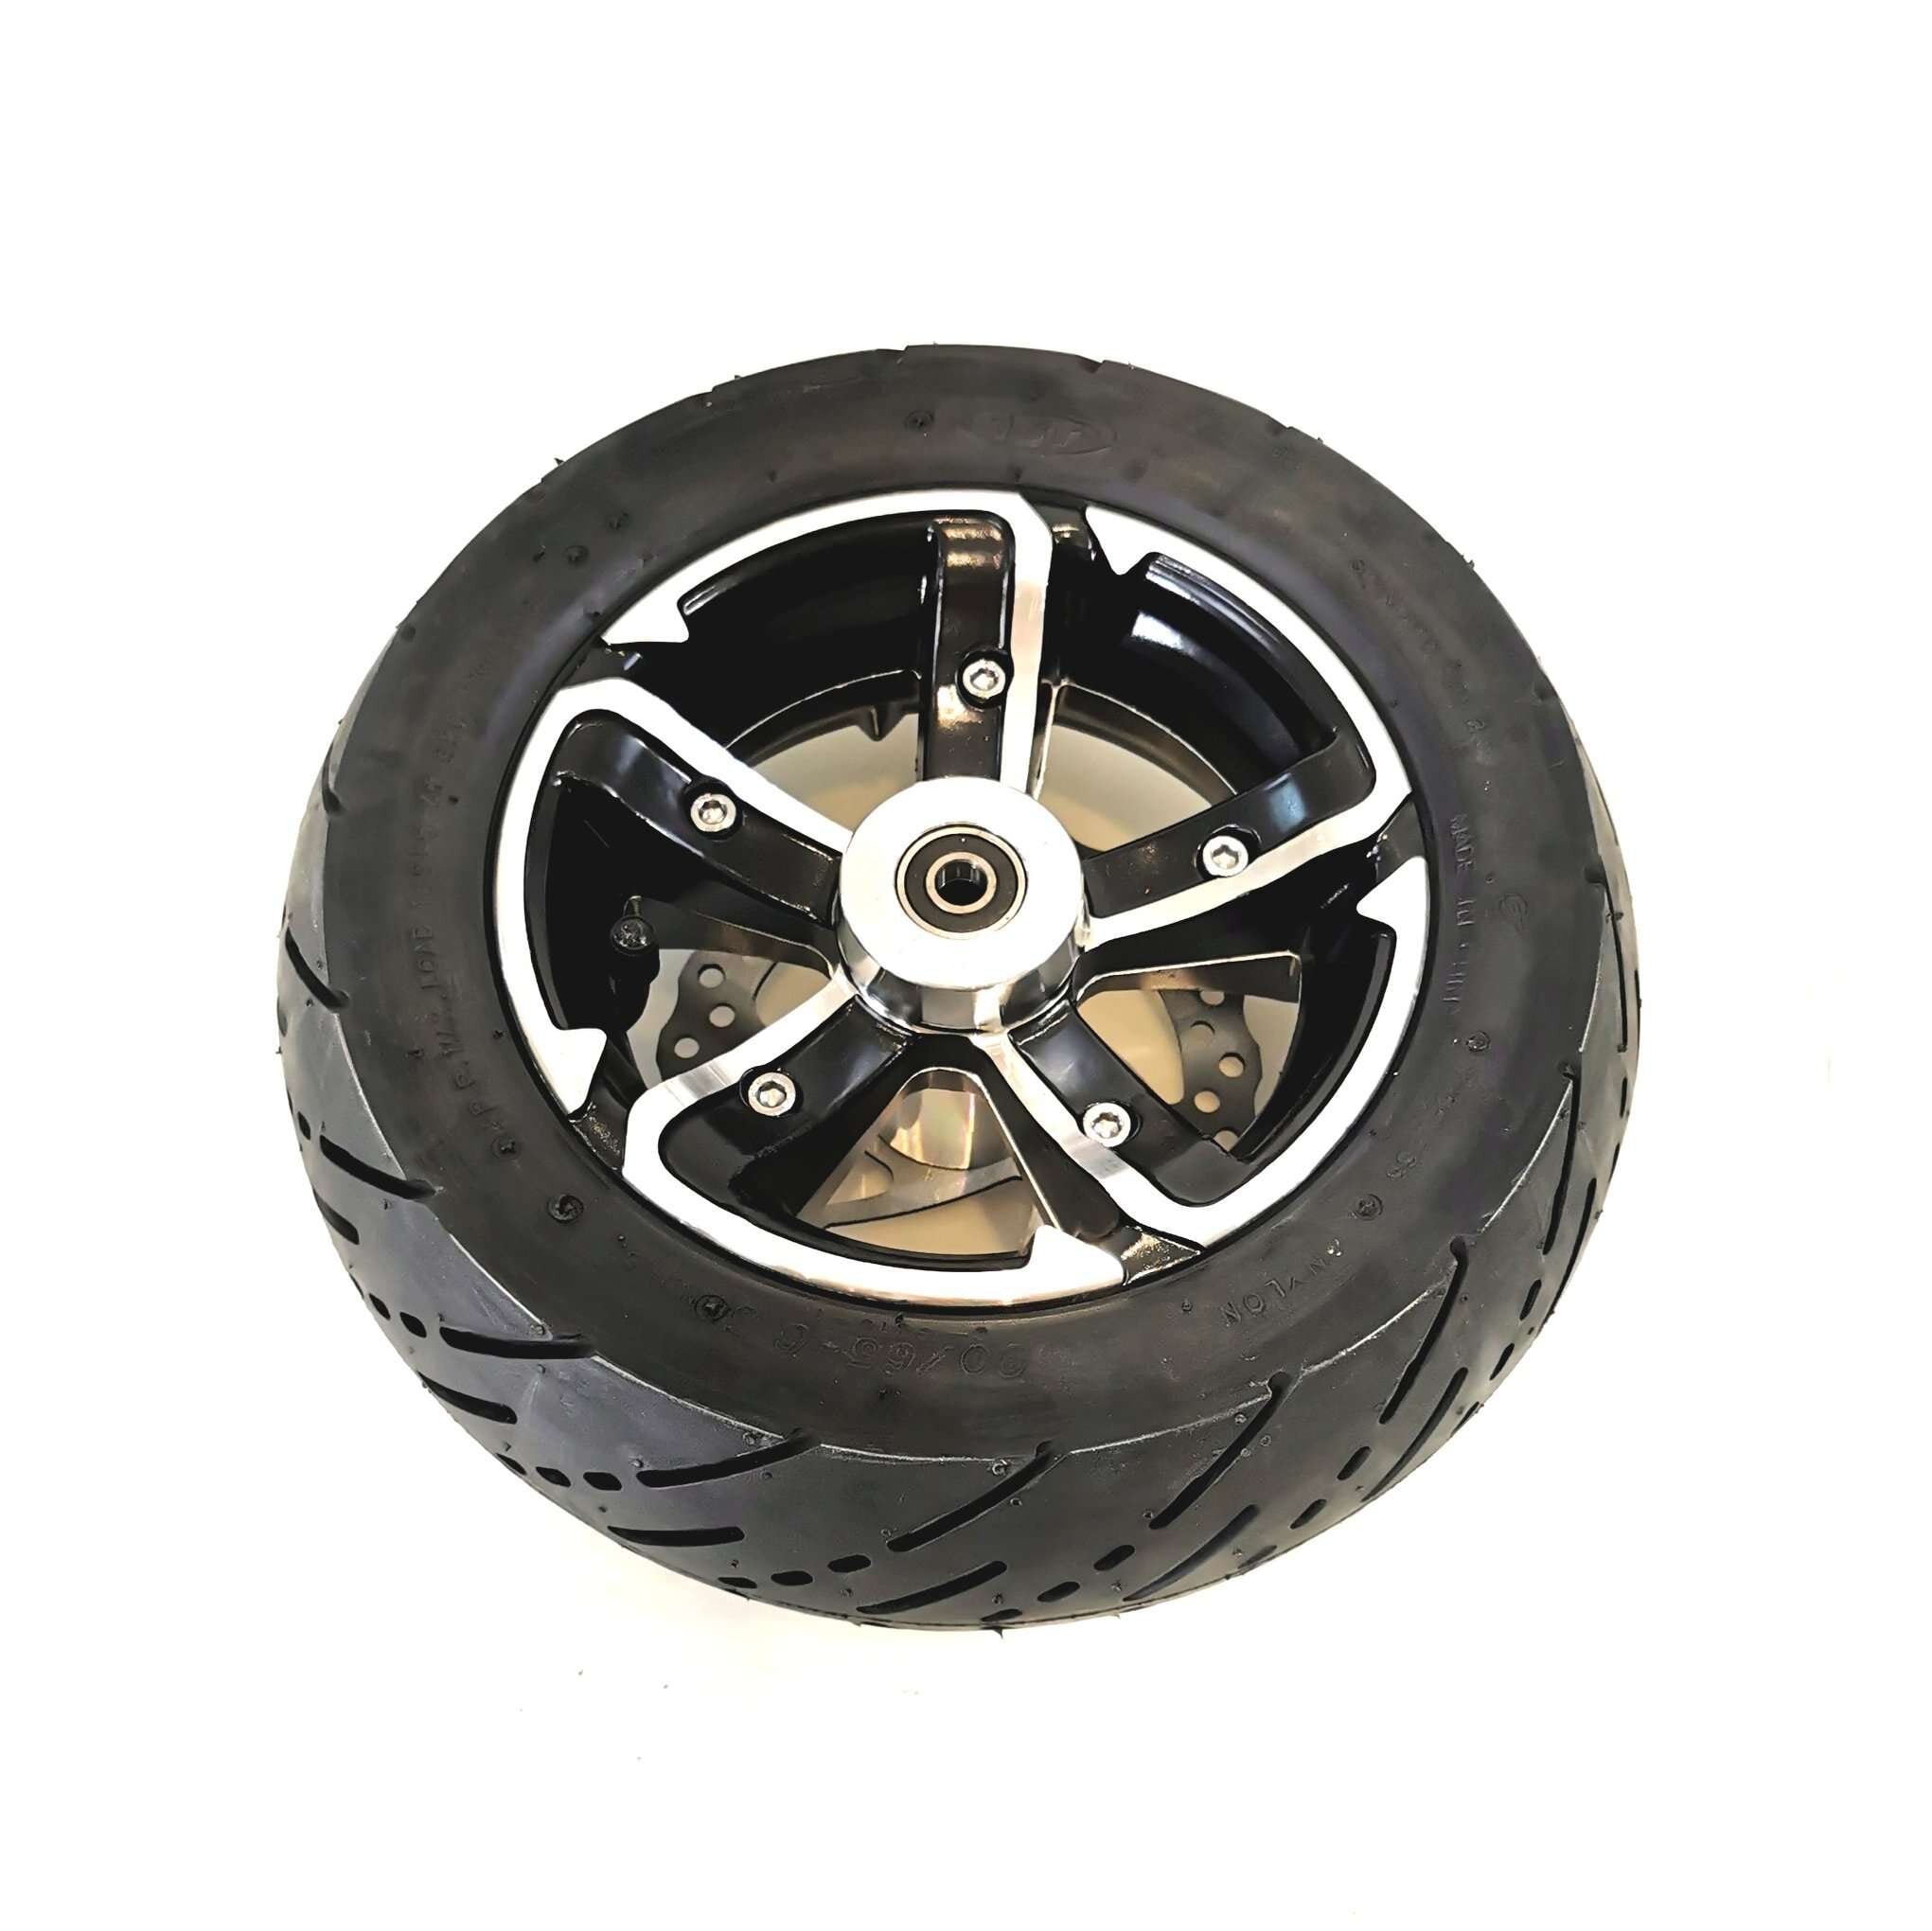 Framhjul med däck och slang, till elscooter RACE edition från 2016 och framåt